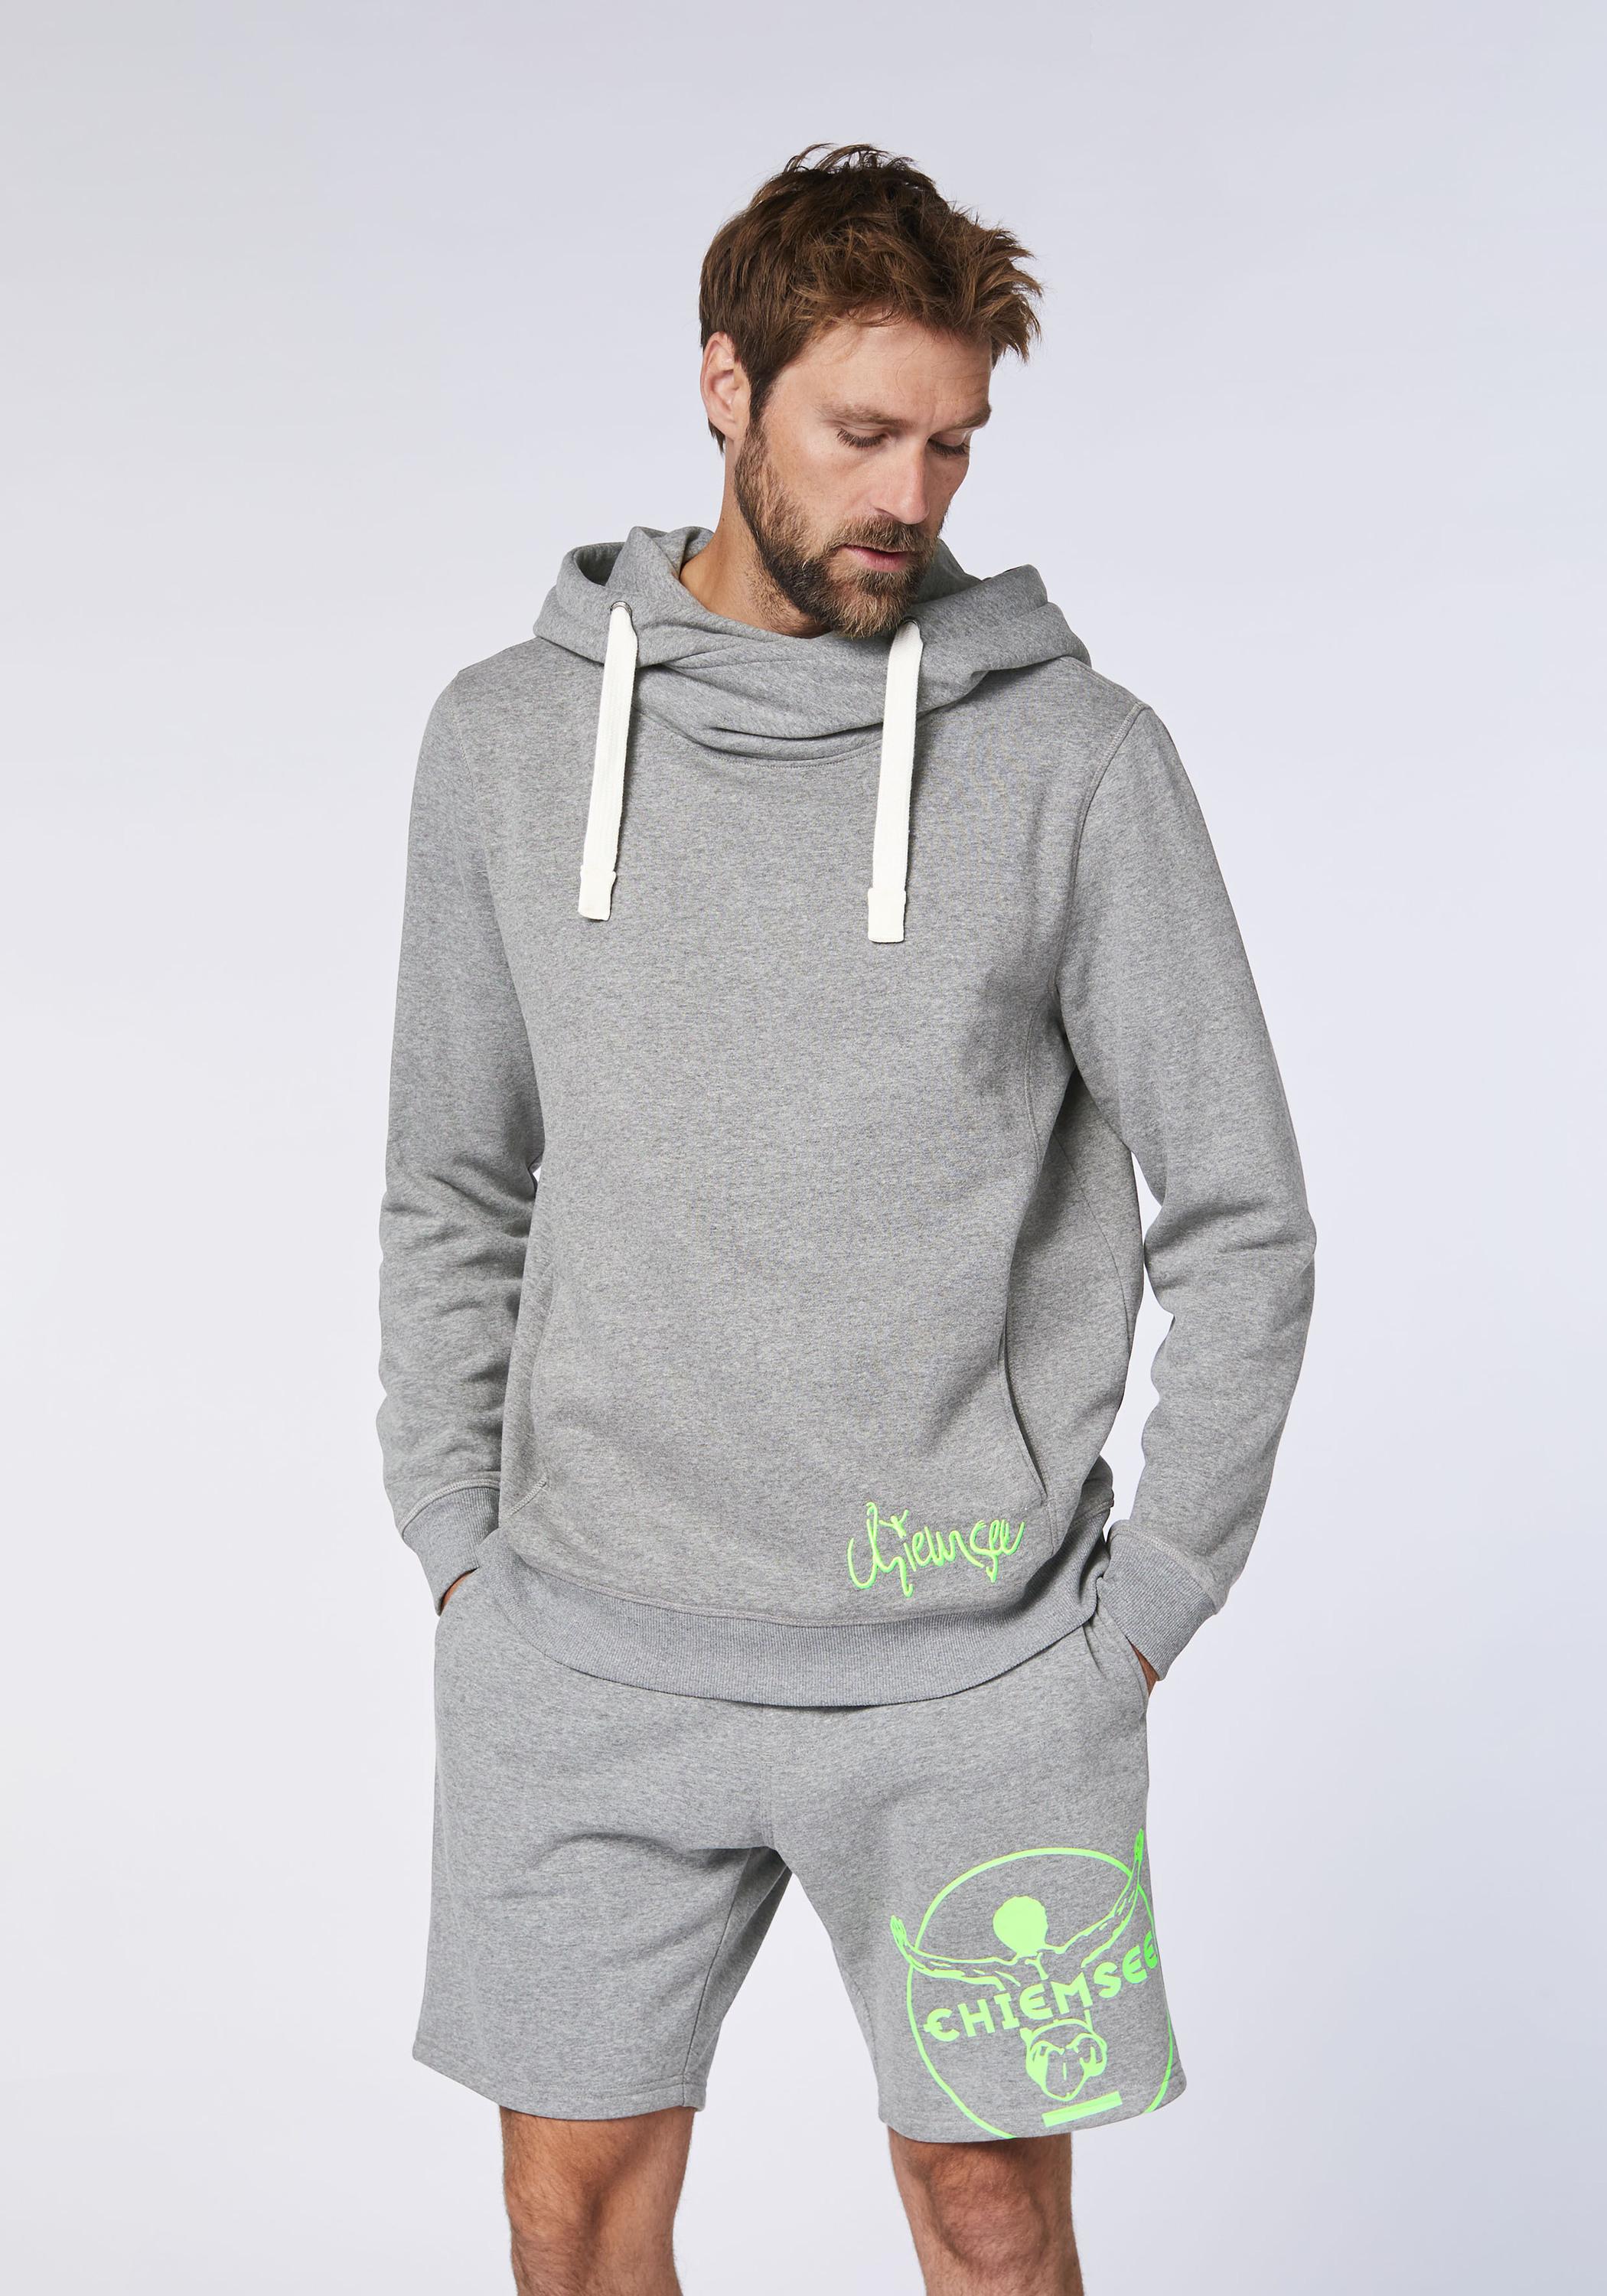 Shop von kaufen Medium Herren im SportScheck Online Hoodie Sweatshirt Chiemsee Melange